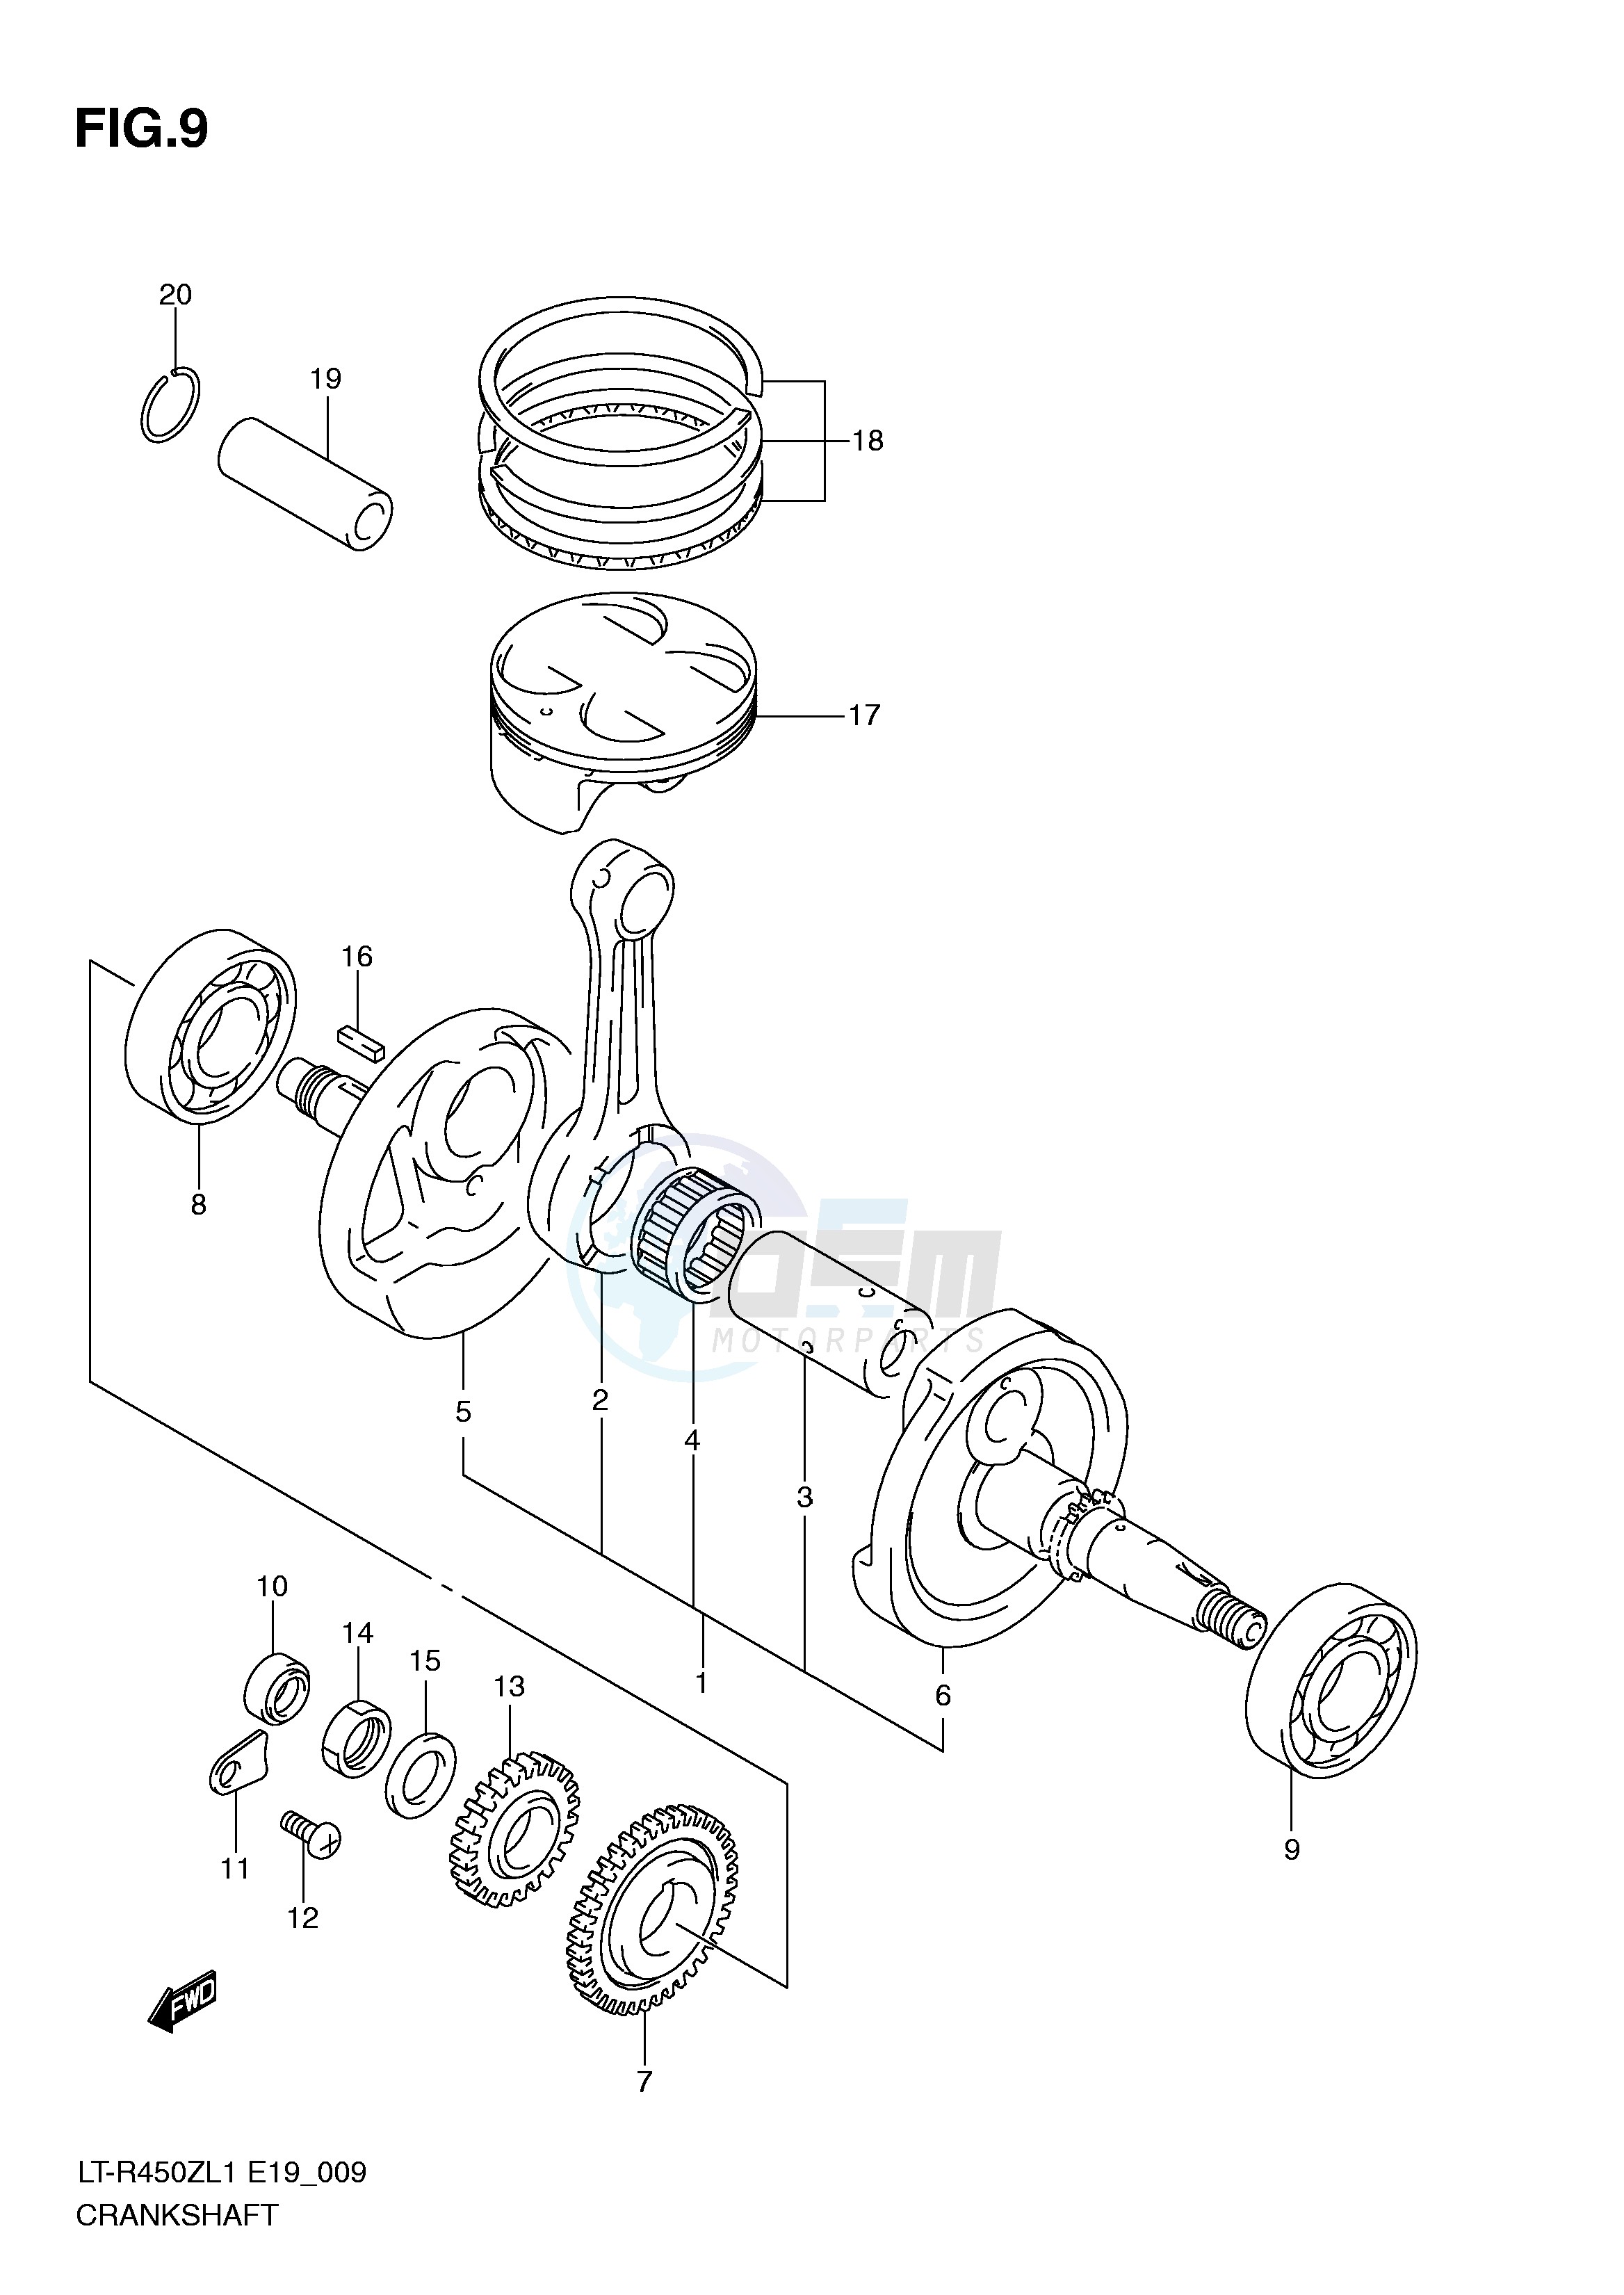 CRANKSHAFT (LT-R450L1 E19) blueprint